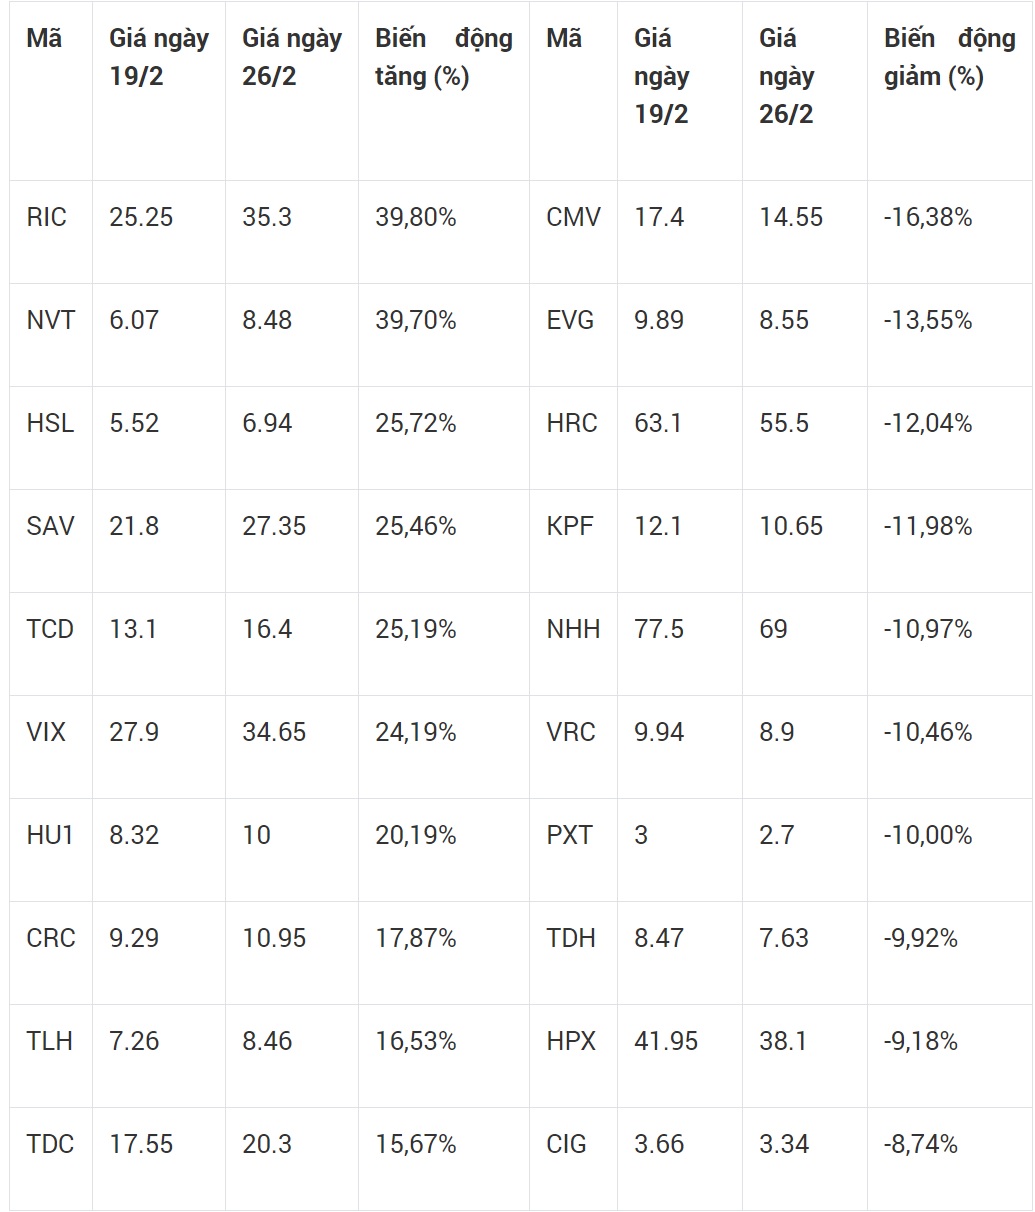 Top 10 cổ phiếu tăng/giảm mạnh nhất trên sàn HOSE tuần từ 19/2 đến 26/2